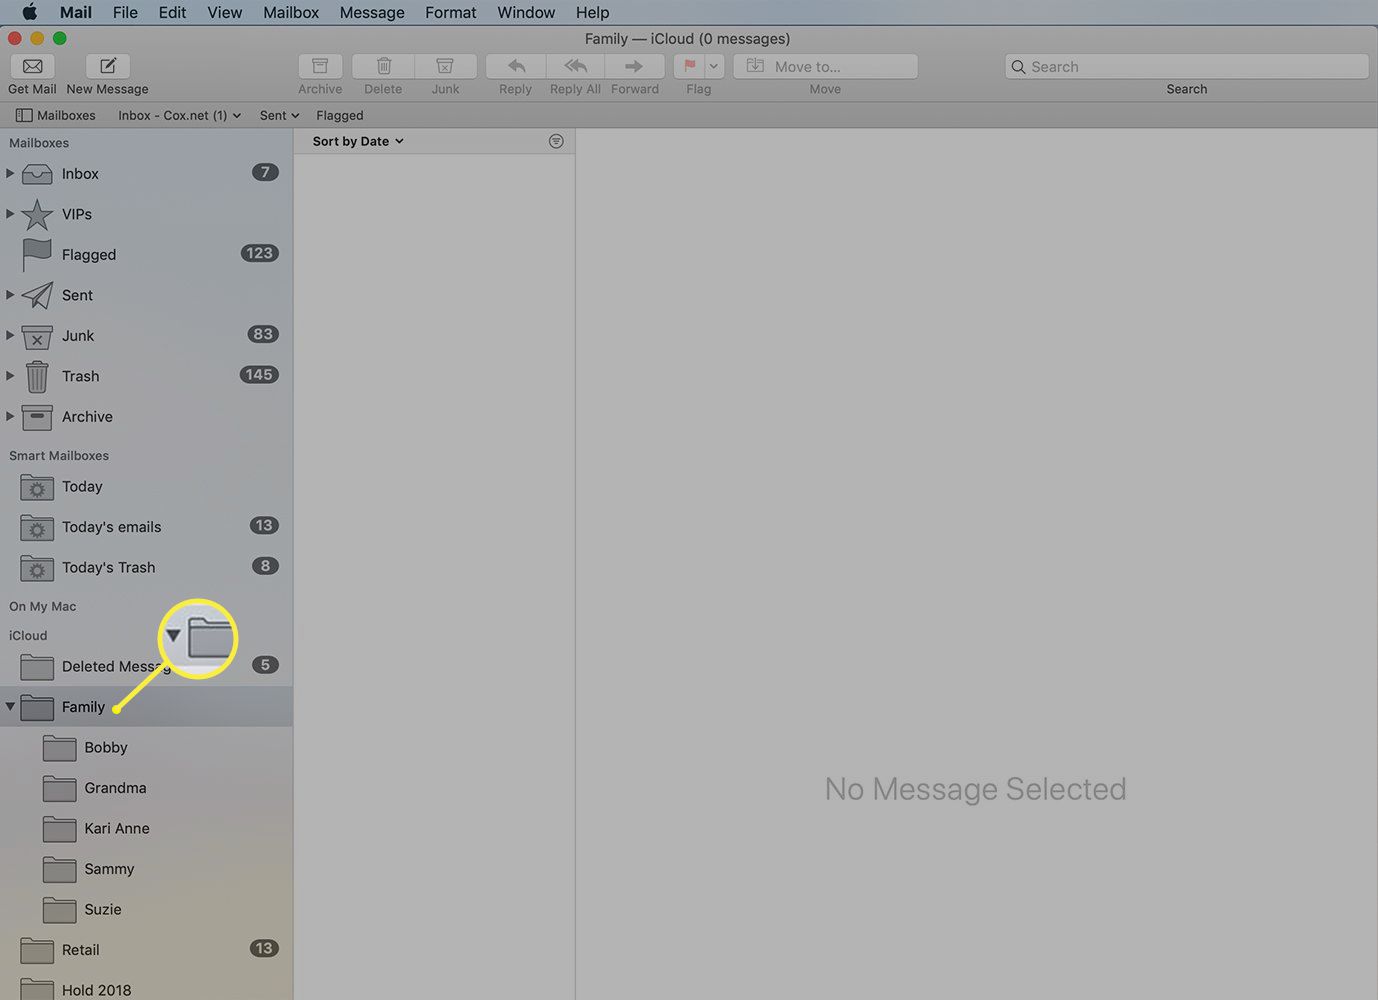 Caixa de correio de nível superior expandida para mostrar subpastas no Mac Mail